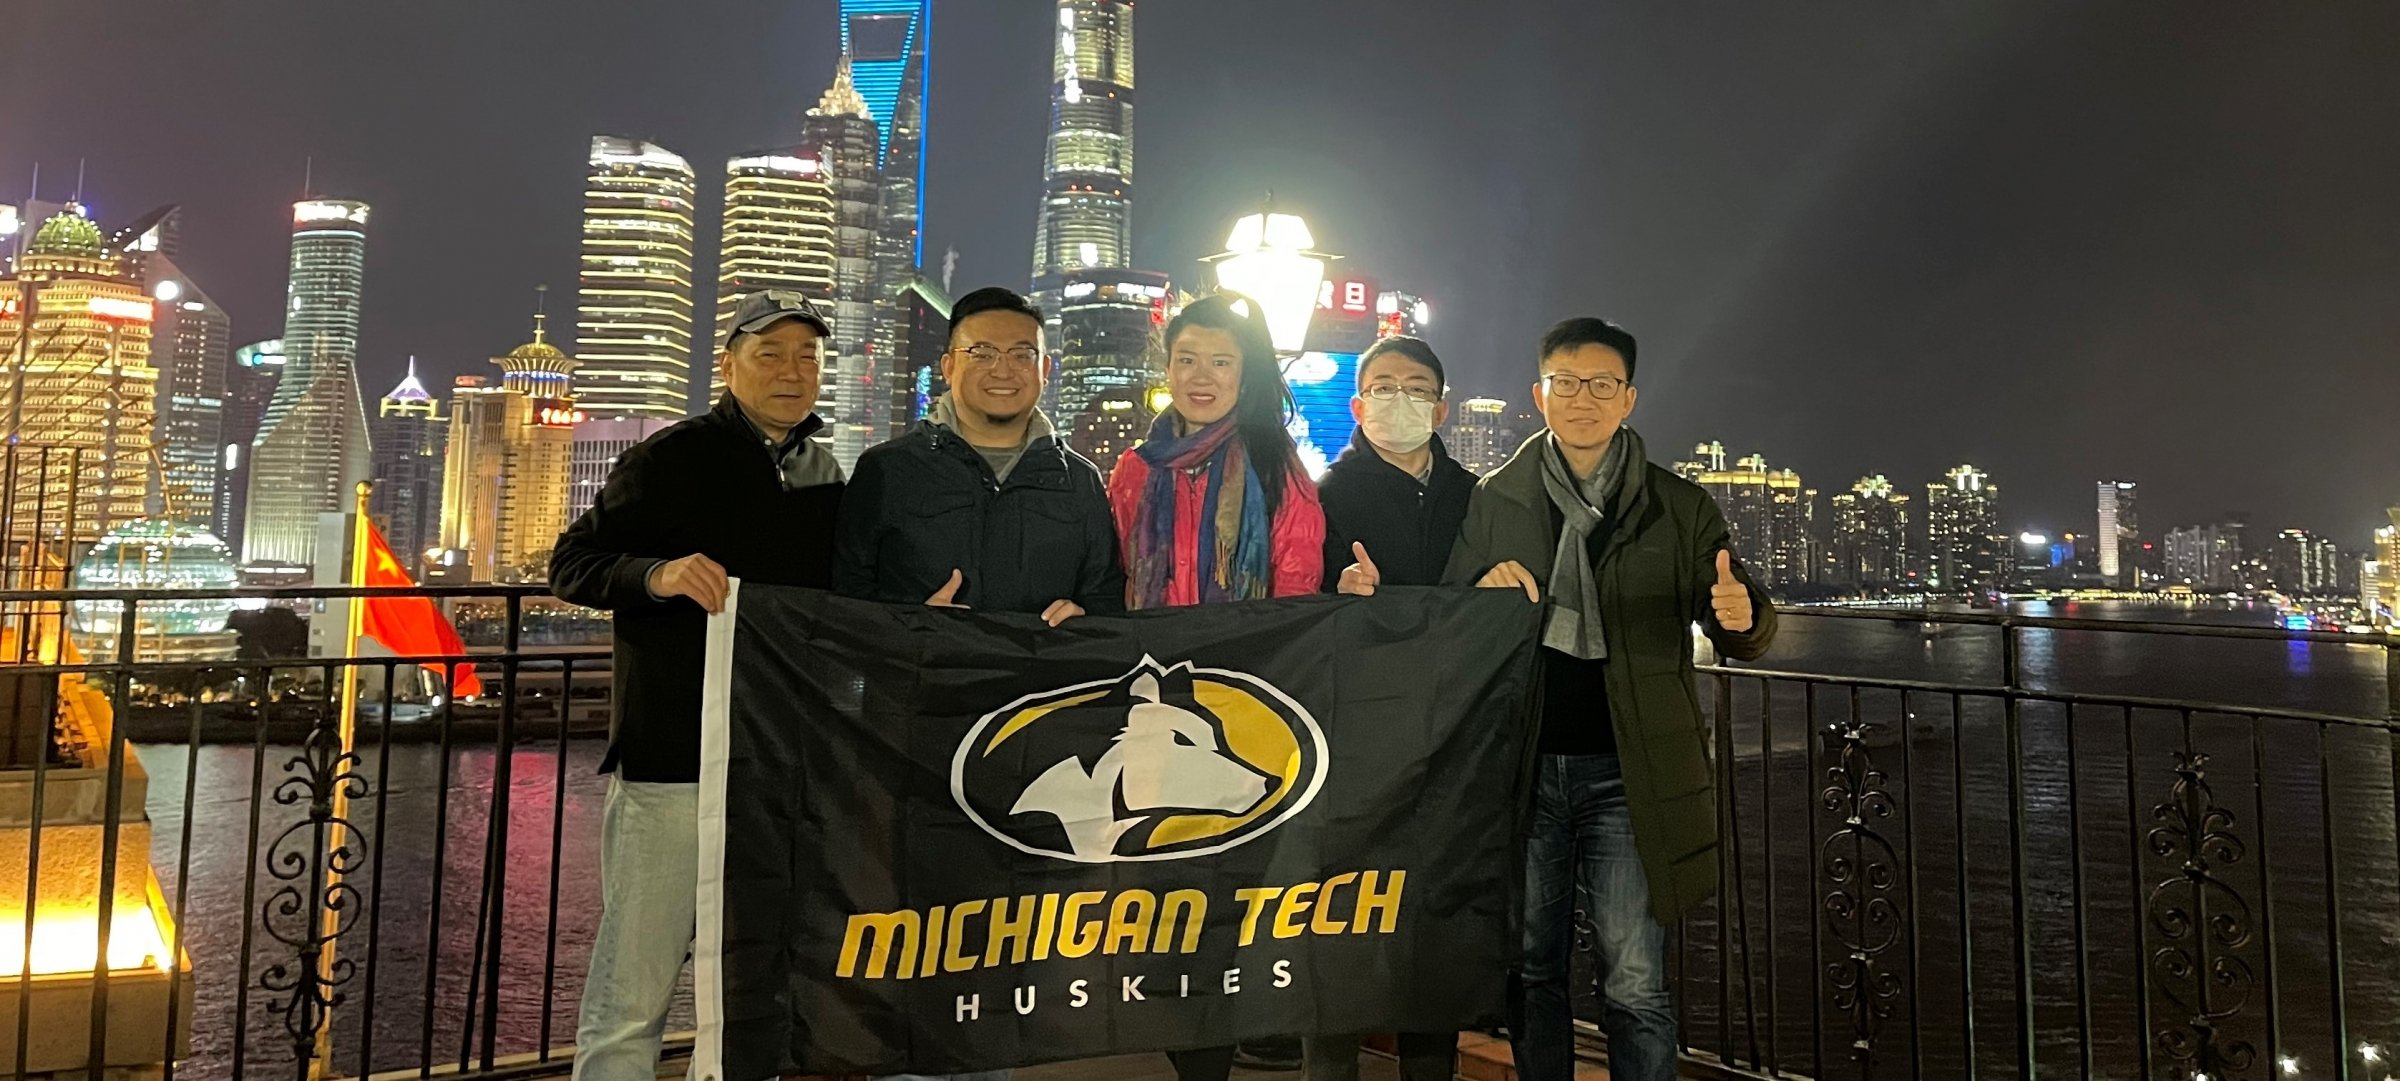 Michigan Tech alumni holding an MTU Husky banner in China.